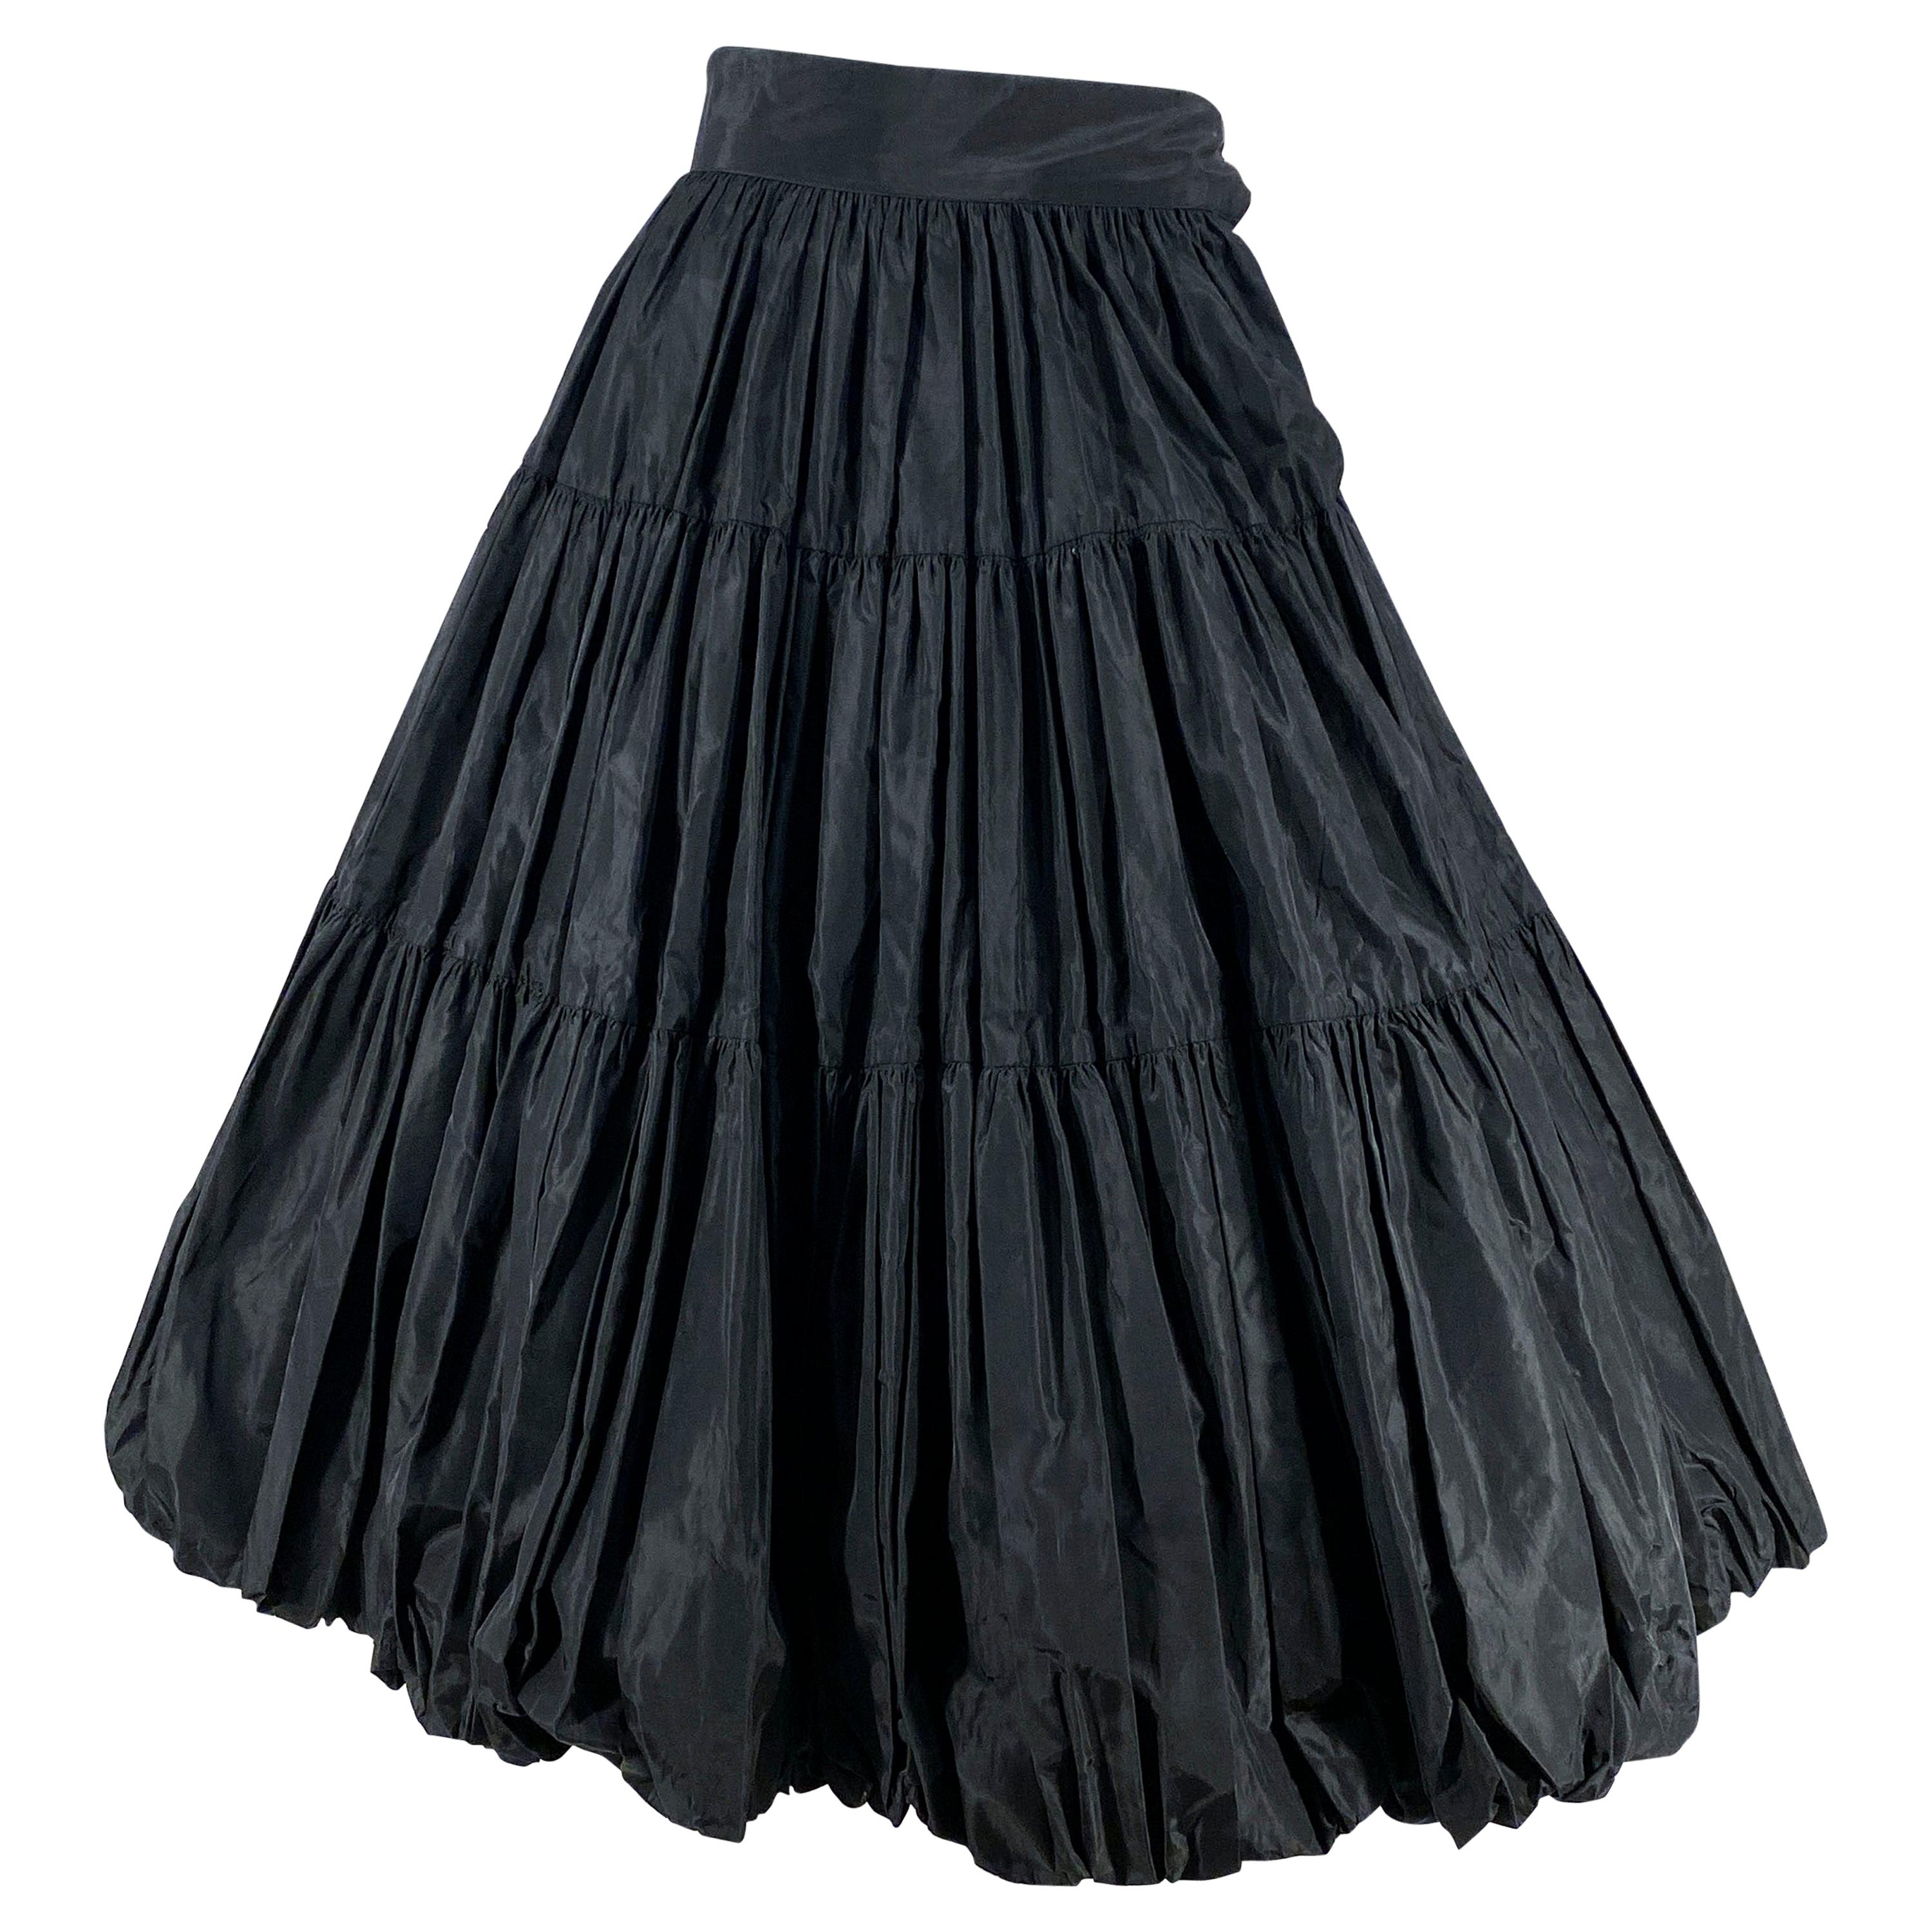 1950s Black Taffeta Balloon Skirt